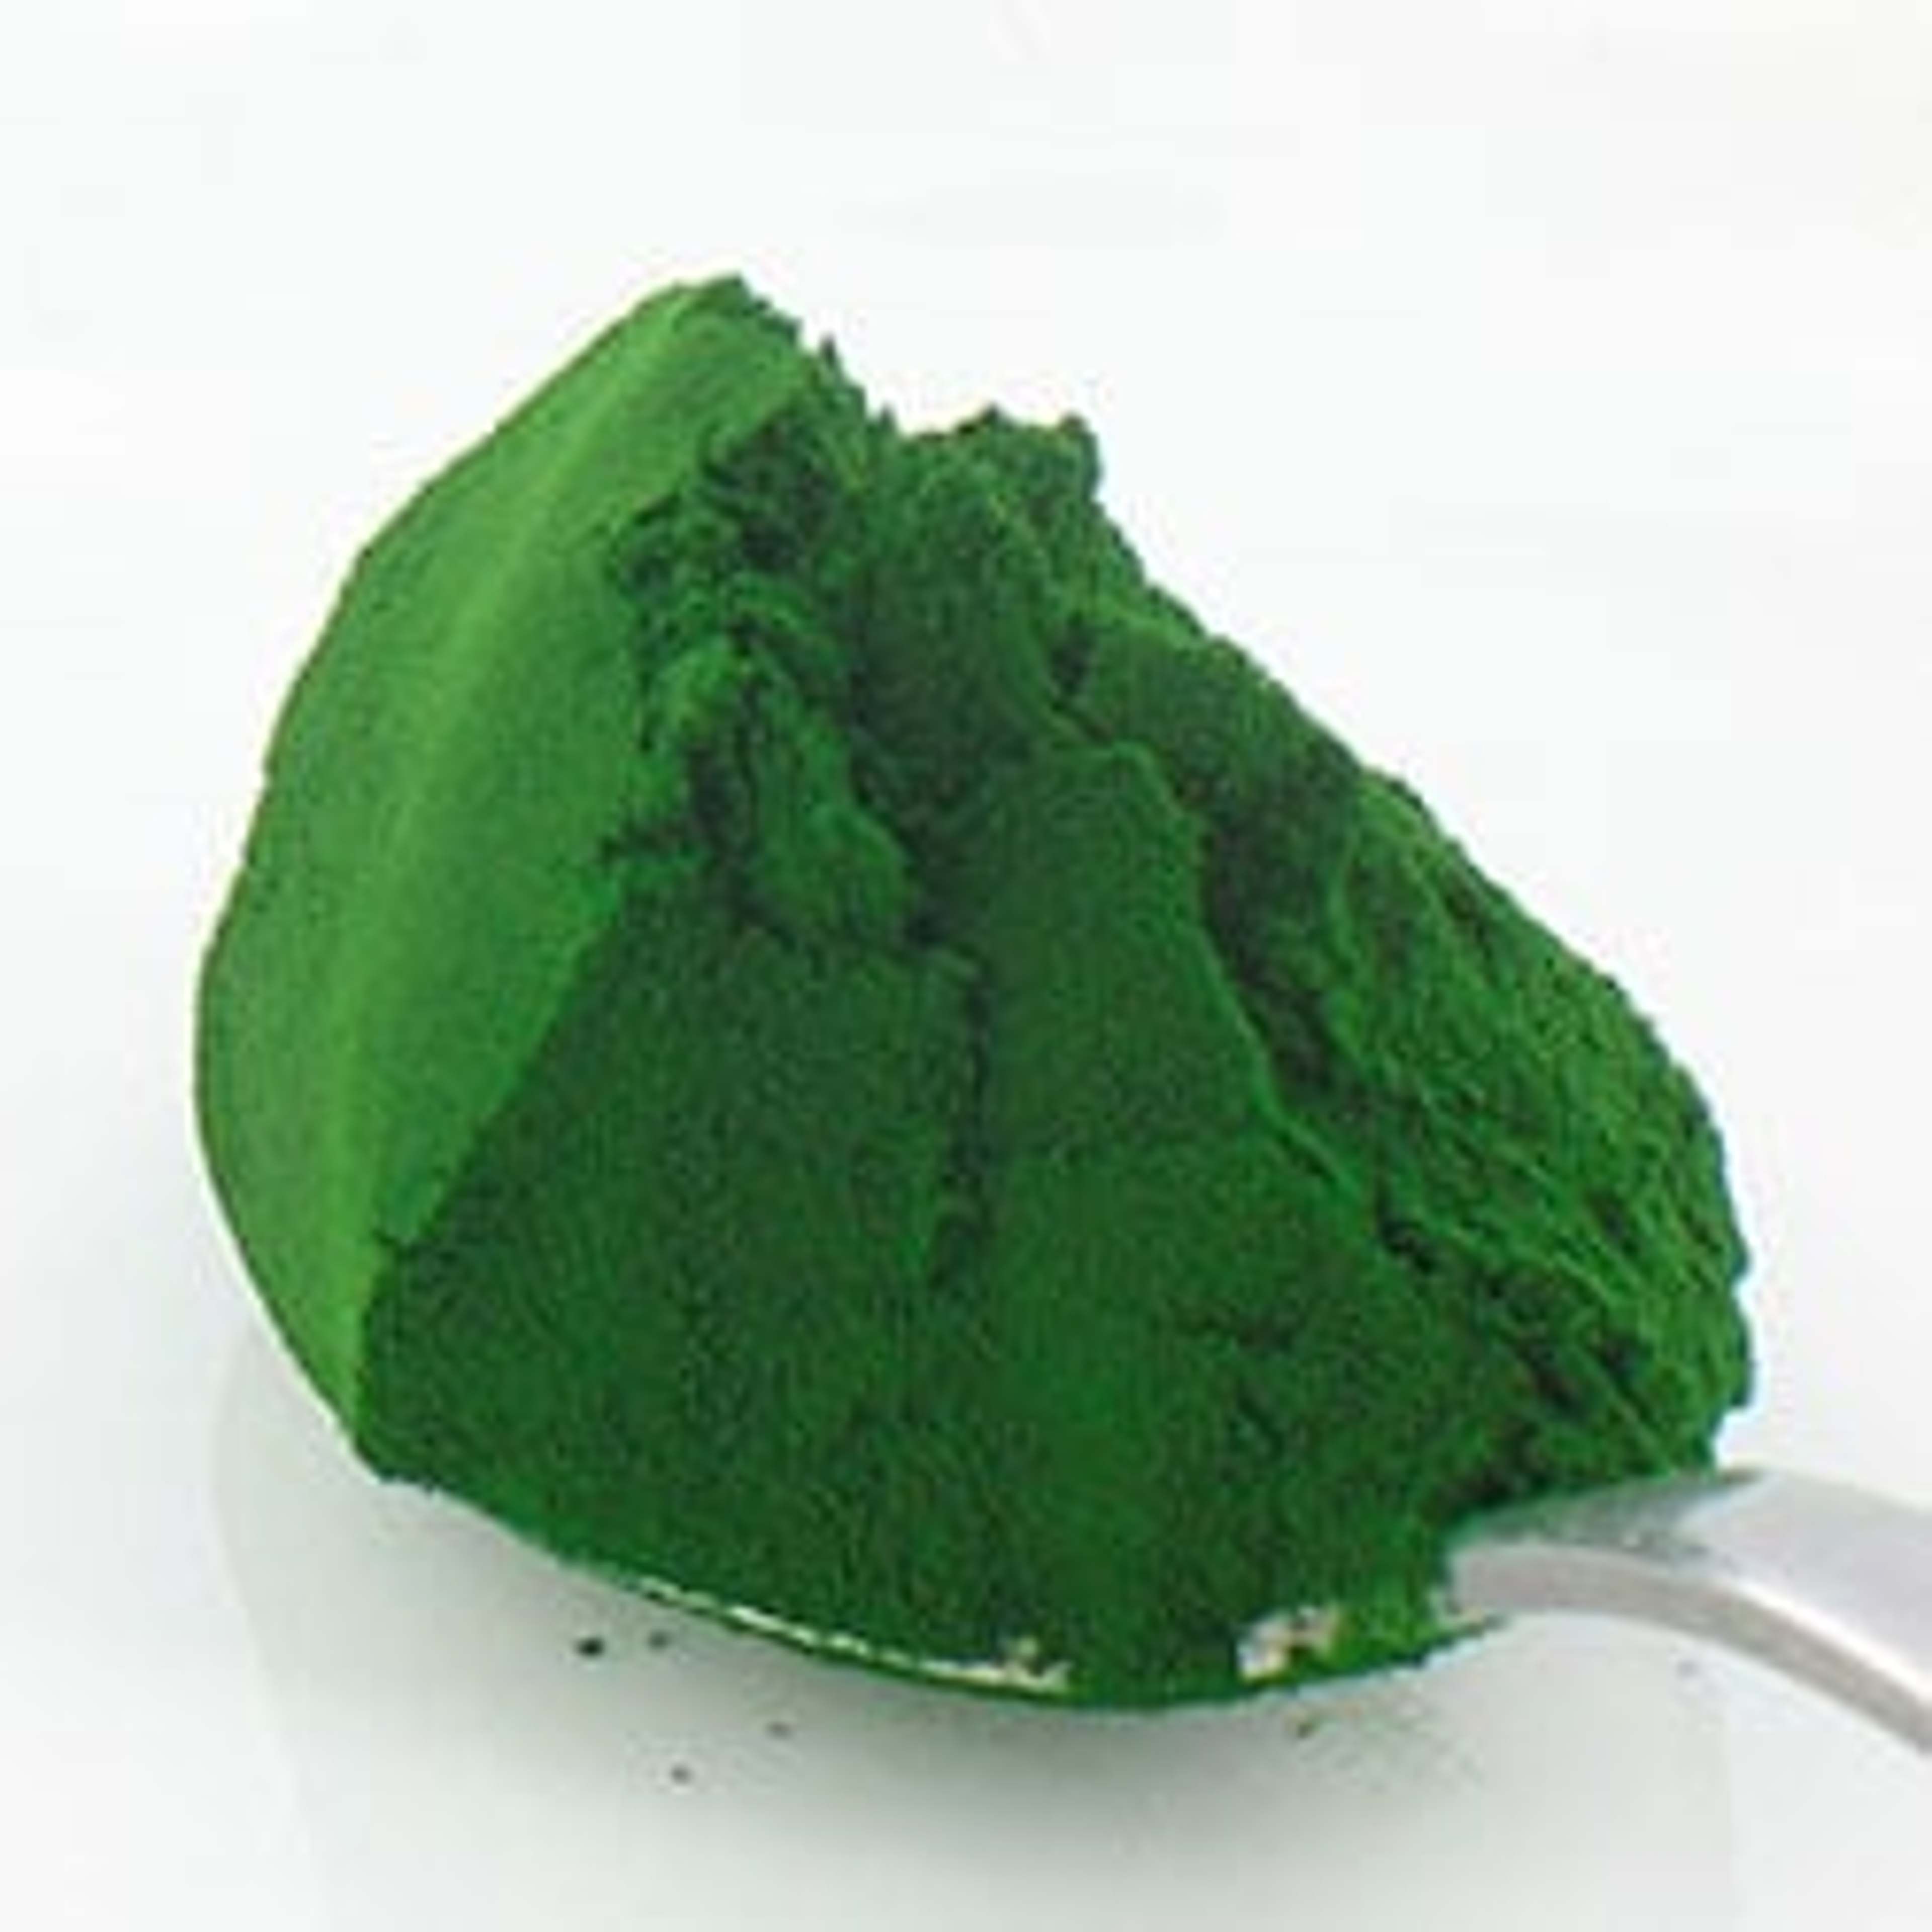 Chlorella liefert neben Chlorophyll auch wertvolle Mineralien, sowie Selen, Zink und Aminosäuren.